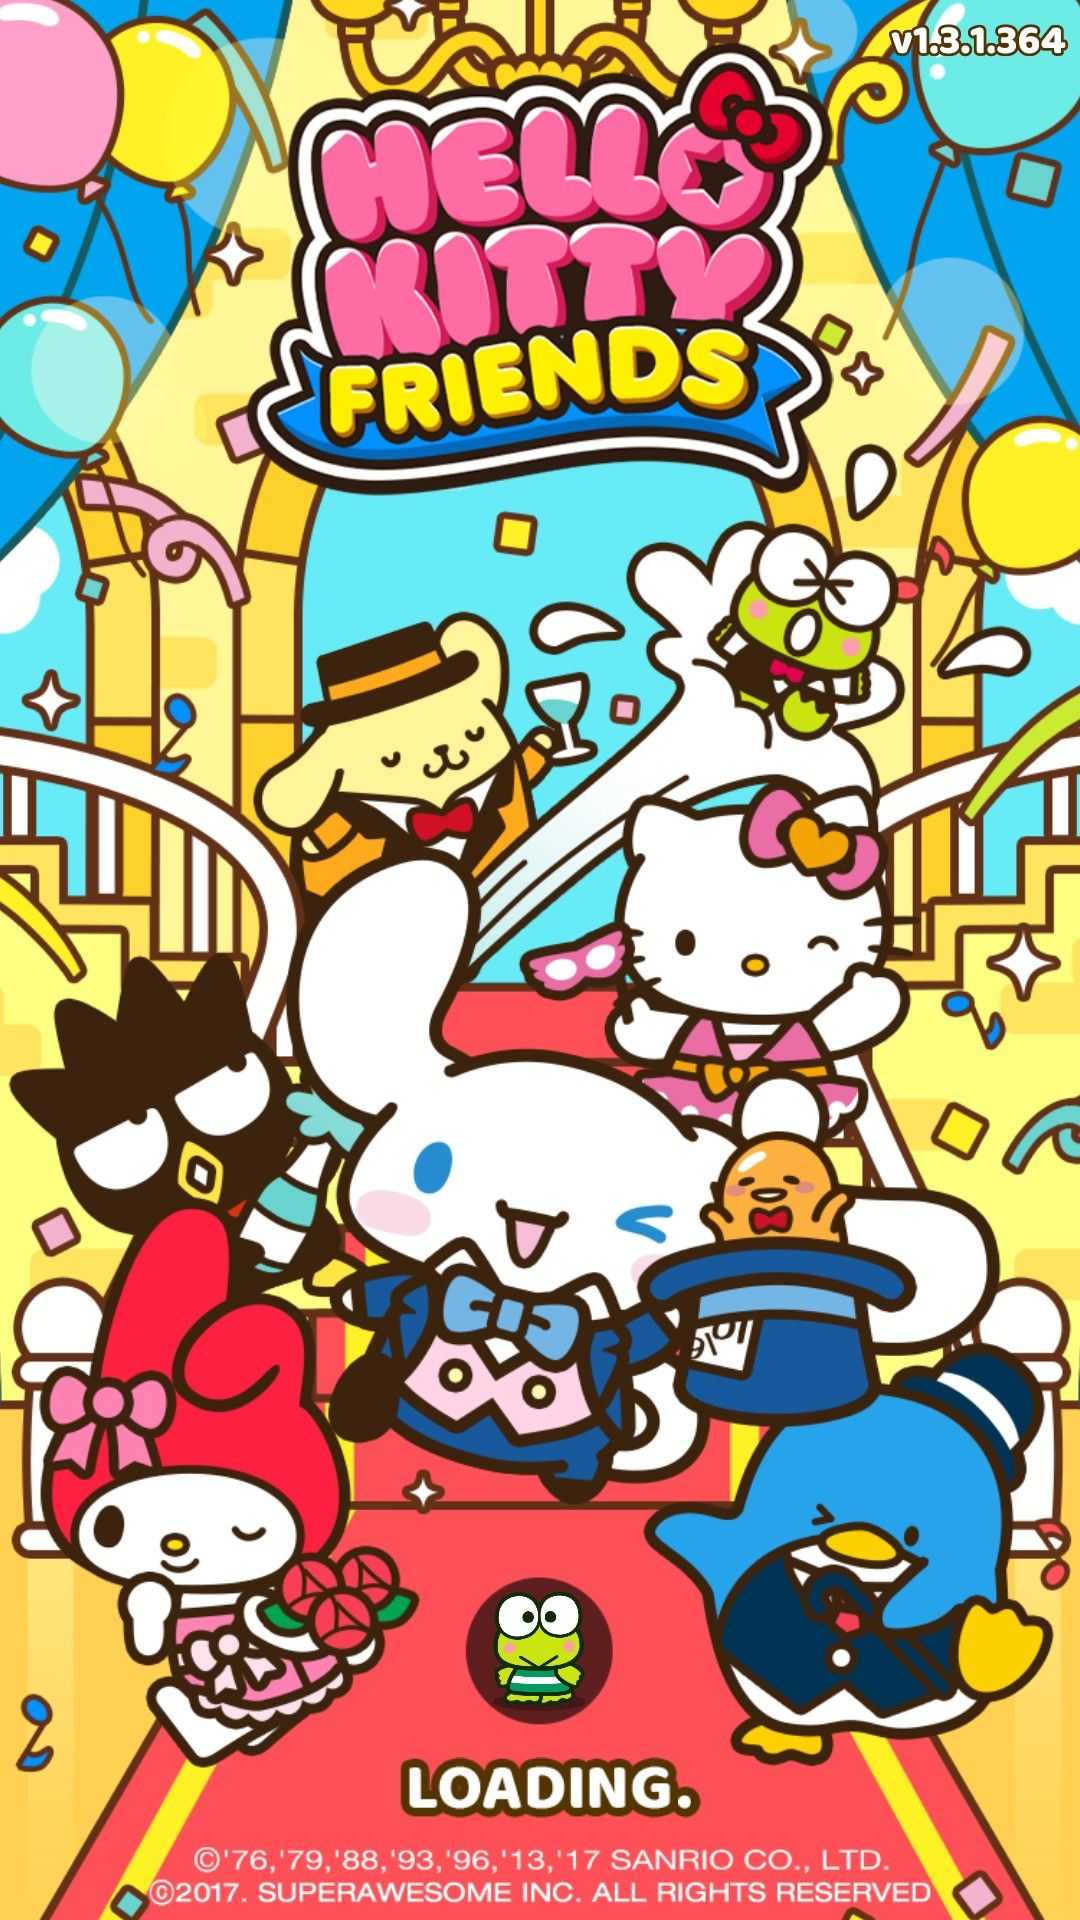 Hello Kitty Friends Wallpaper - EniWp